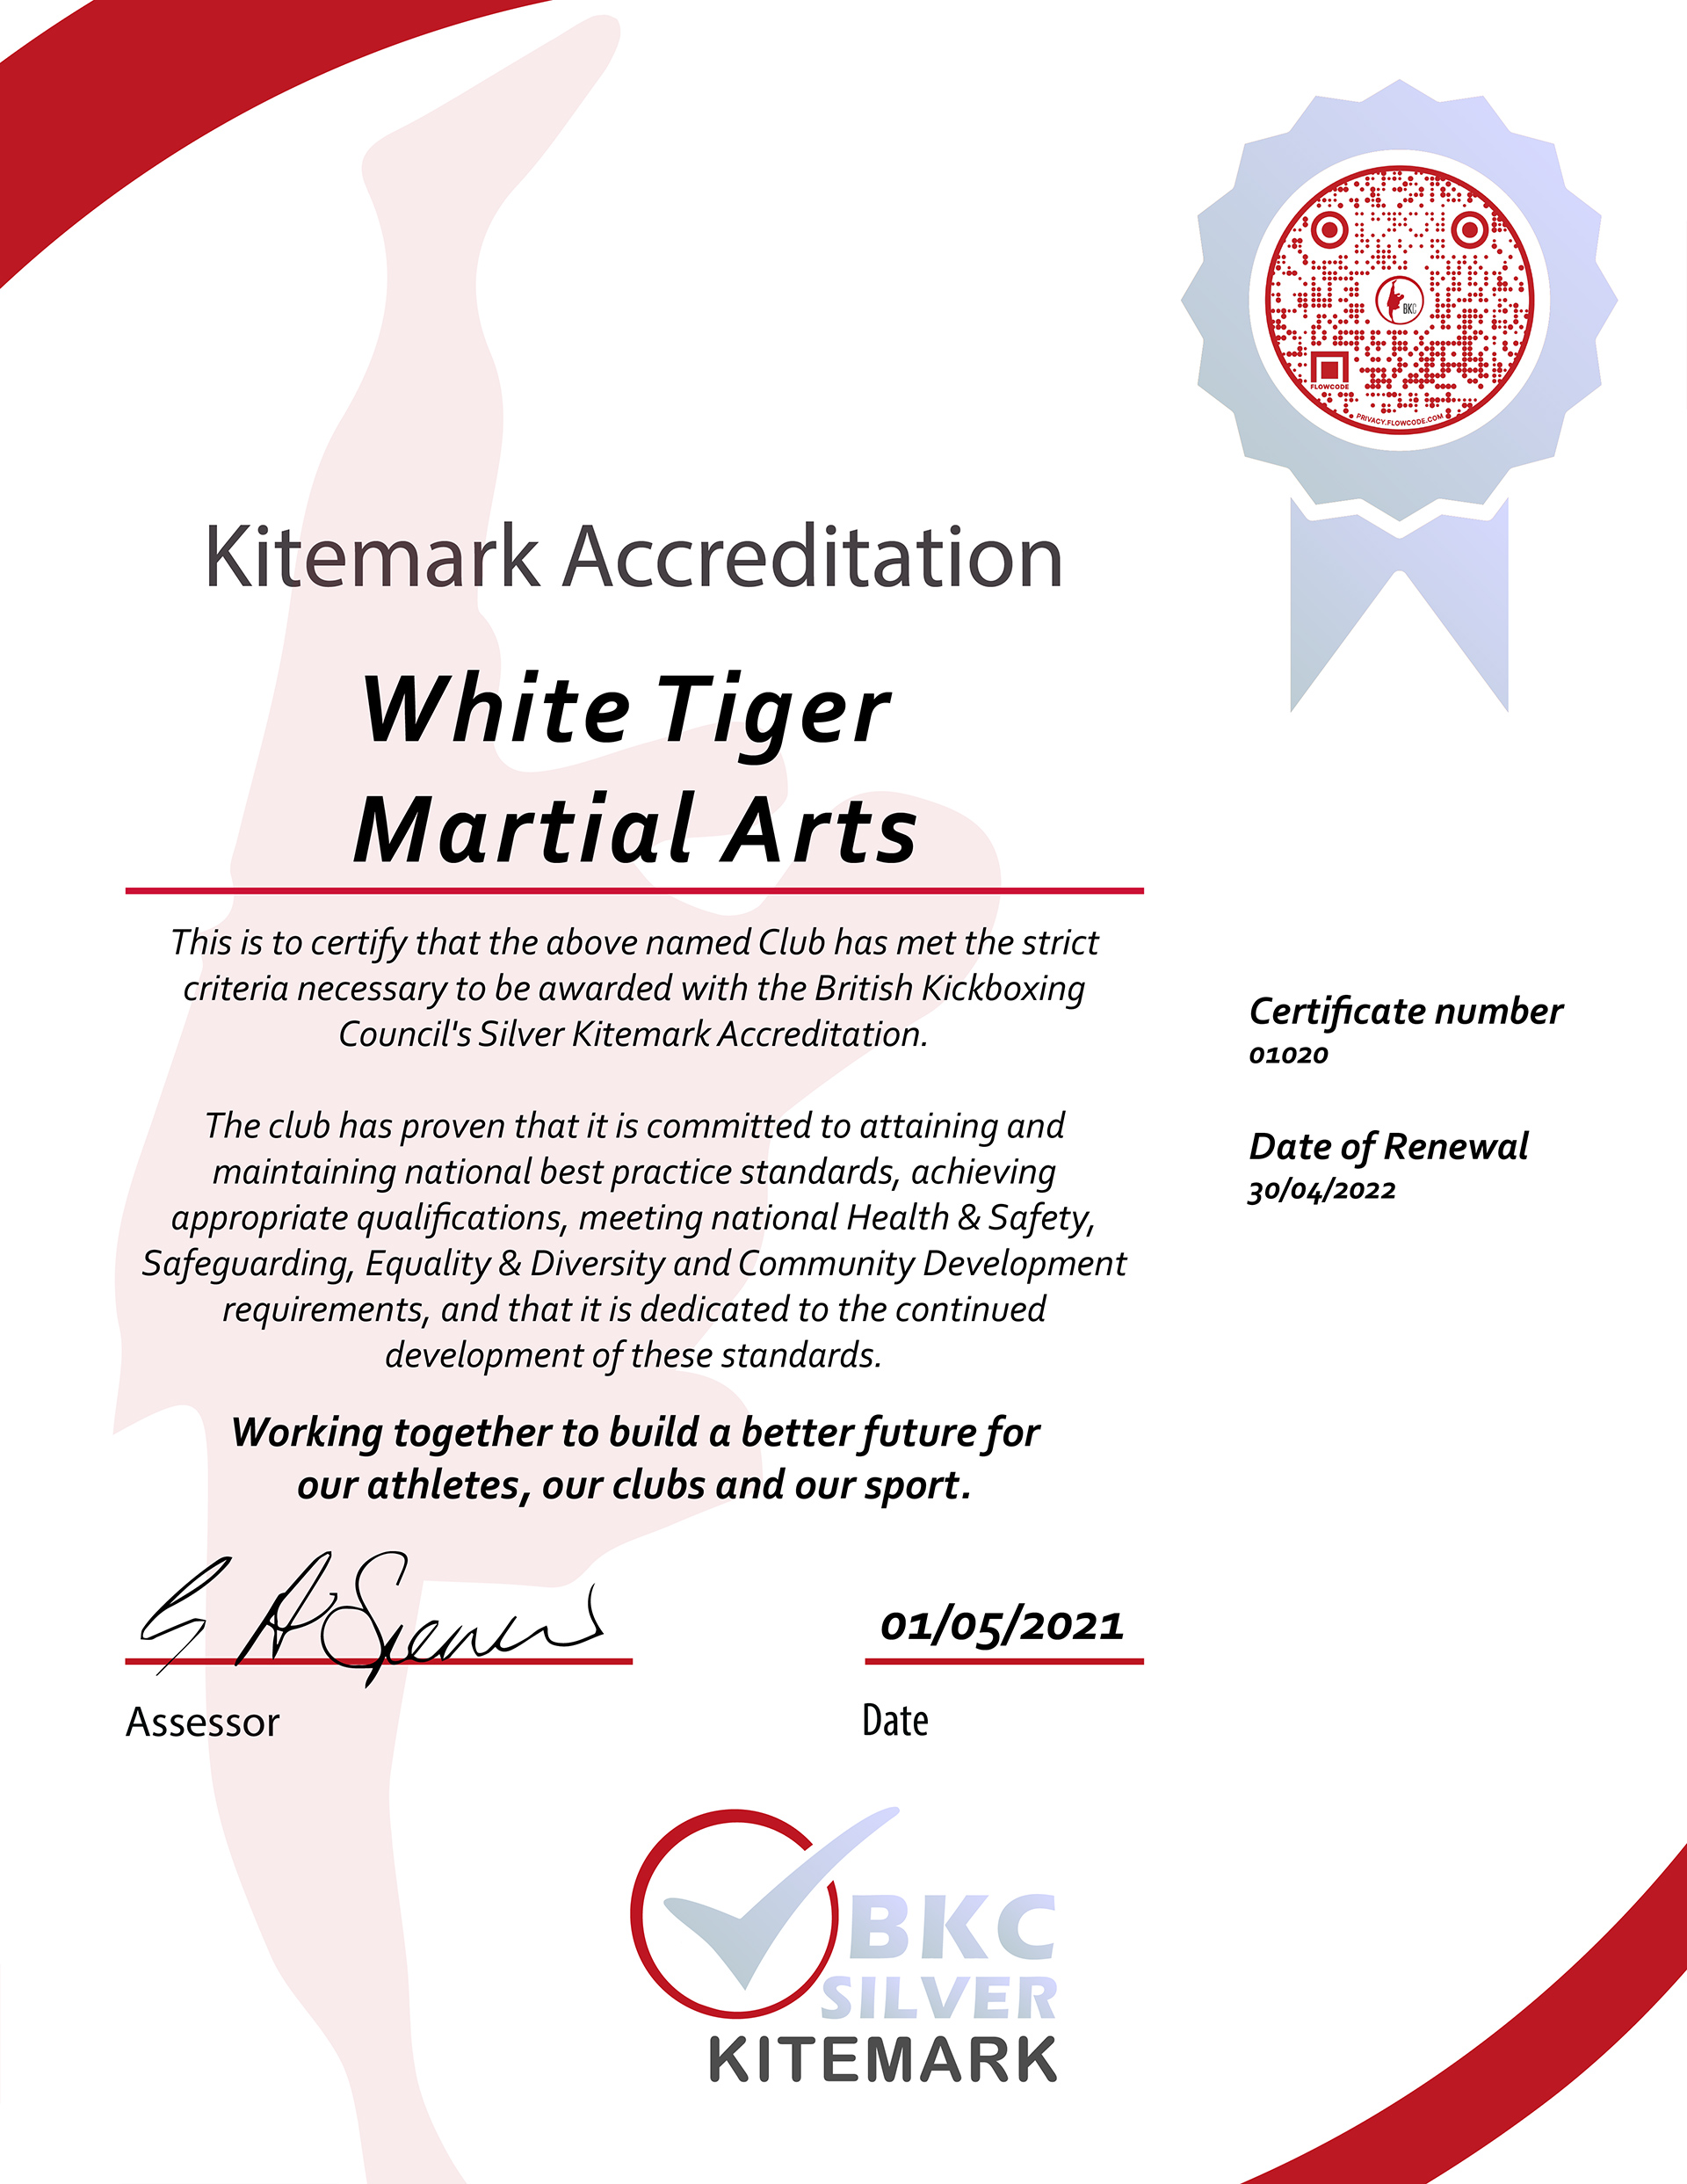 British Kickboxing Council Silver Kitemark Accreditation